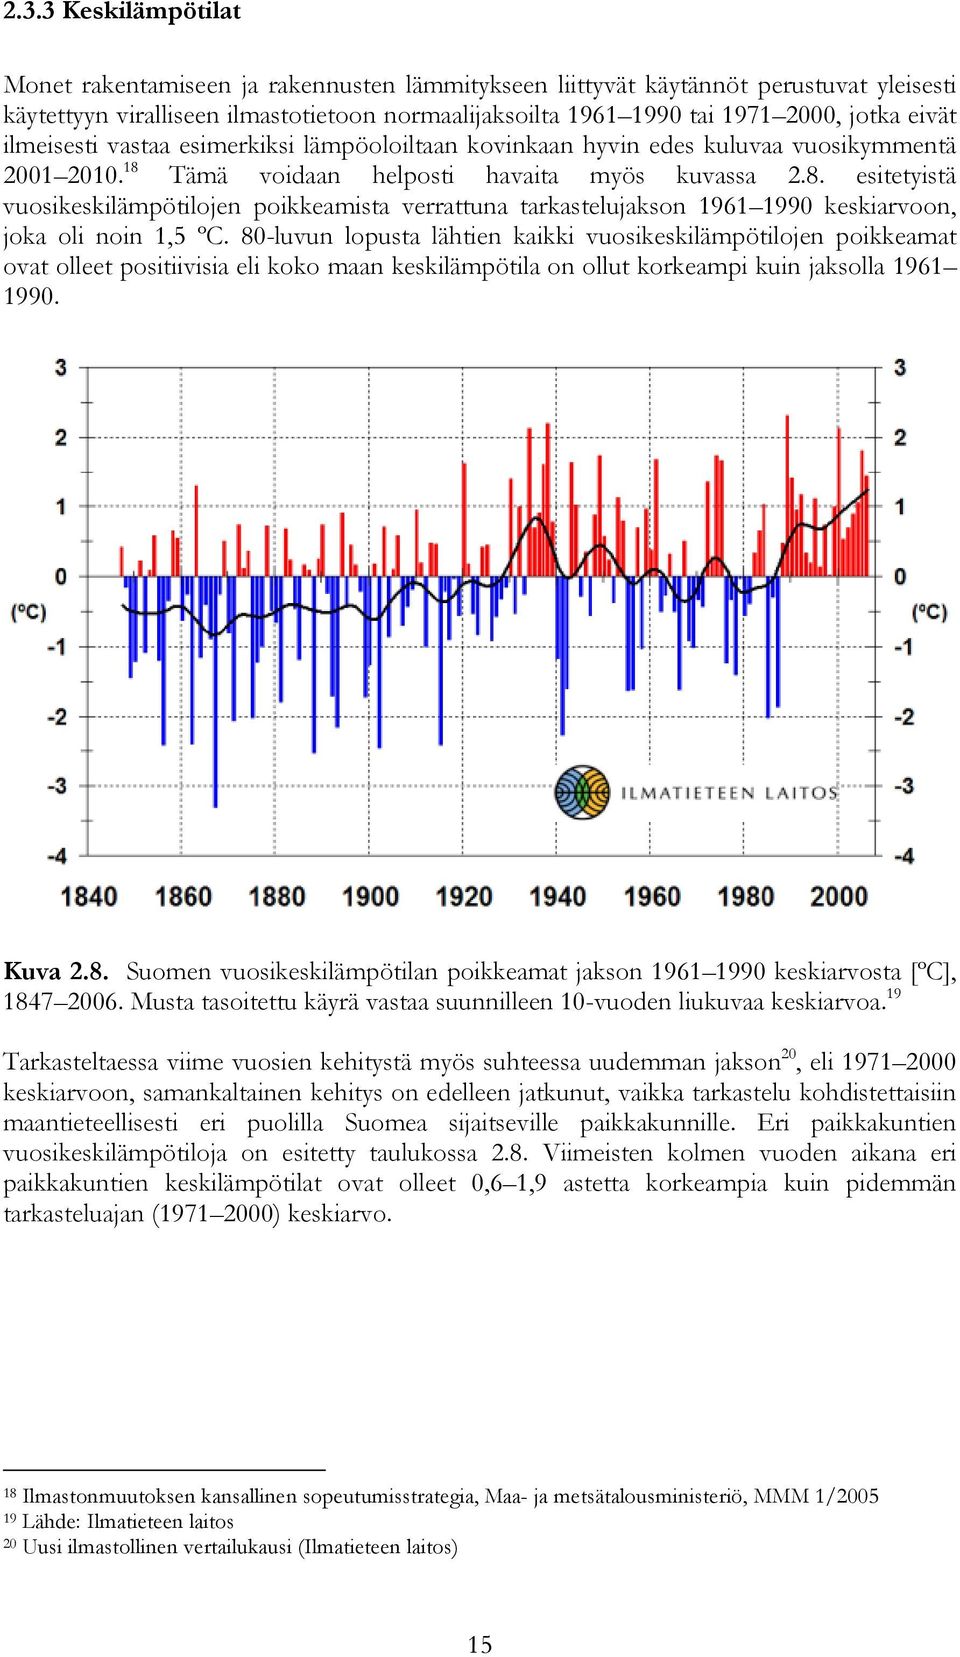 Tämä voidaan helposti havaita myös kuvassa 2.8. esitetyistä vuosikeskilämpötilojen poikkeamista verrattuna tarkastelujakson 1961 1990 keskiarvoon, joka oli noin 1,5 ºC.